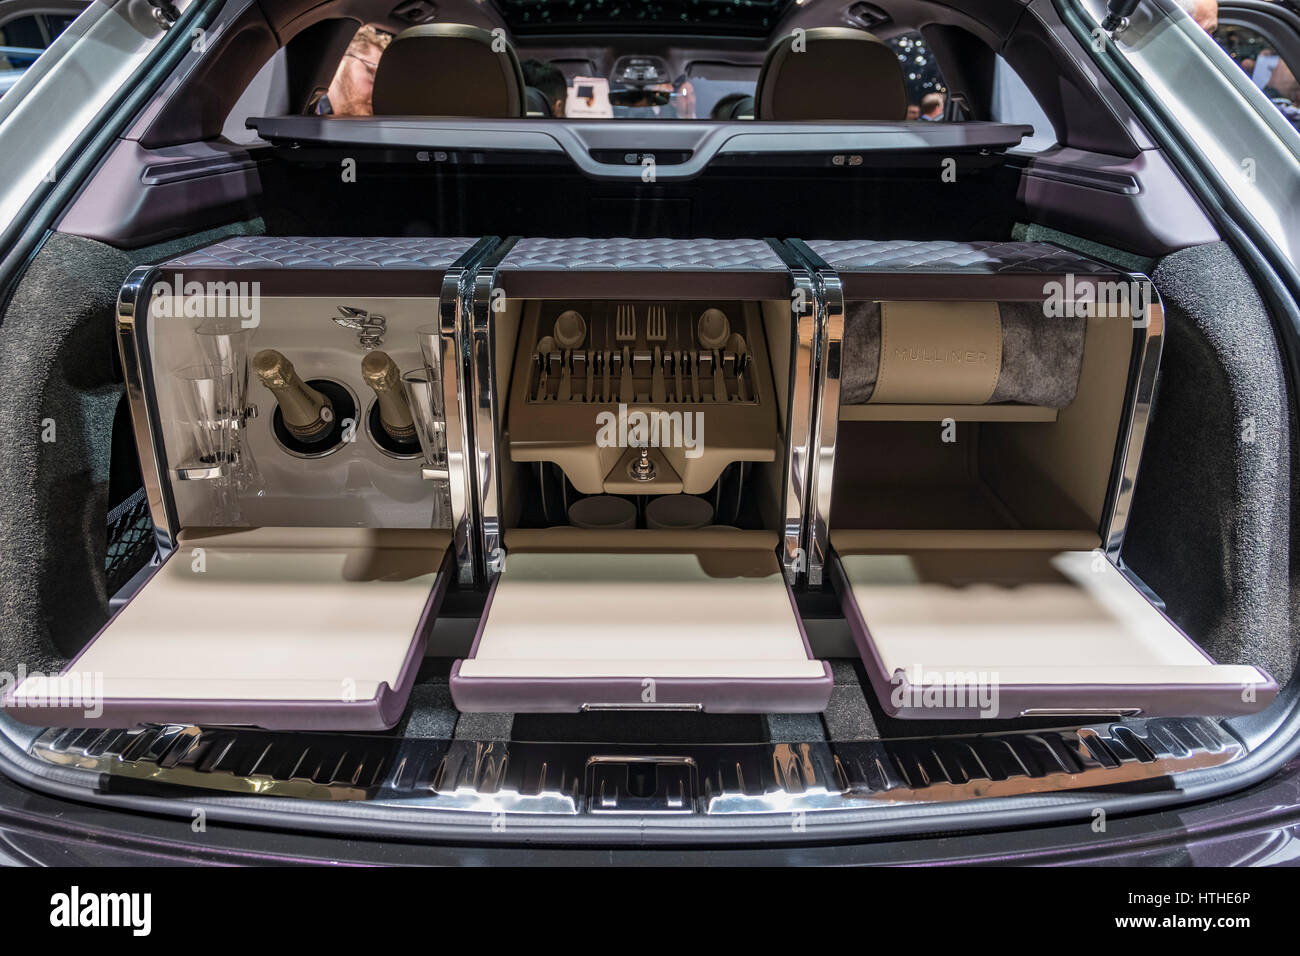 Bentley Mulliner SUV Bentayga special edition de luxe avec boissons et pique-nique au compartiment 87e Salon International de l'Automobile à Genève Suisse Banque D'Images